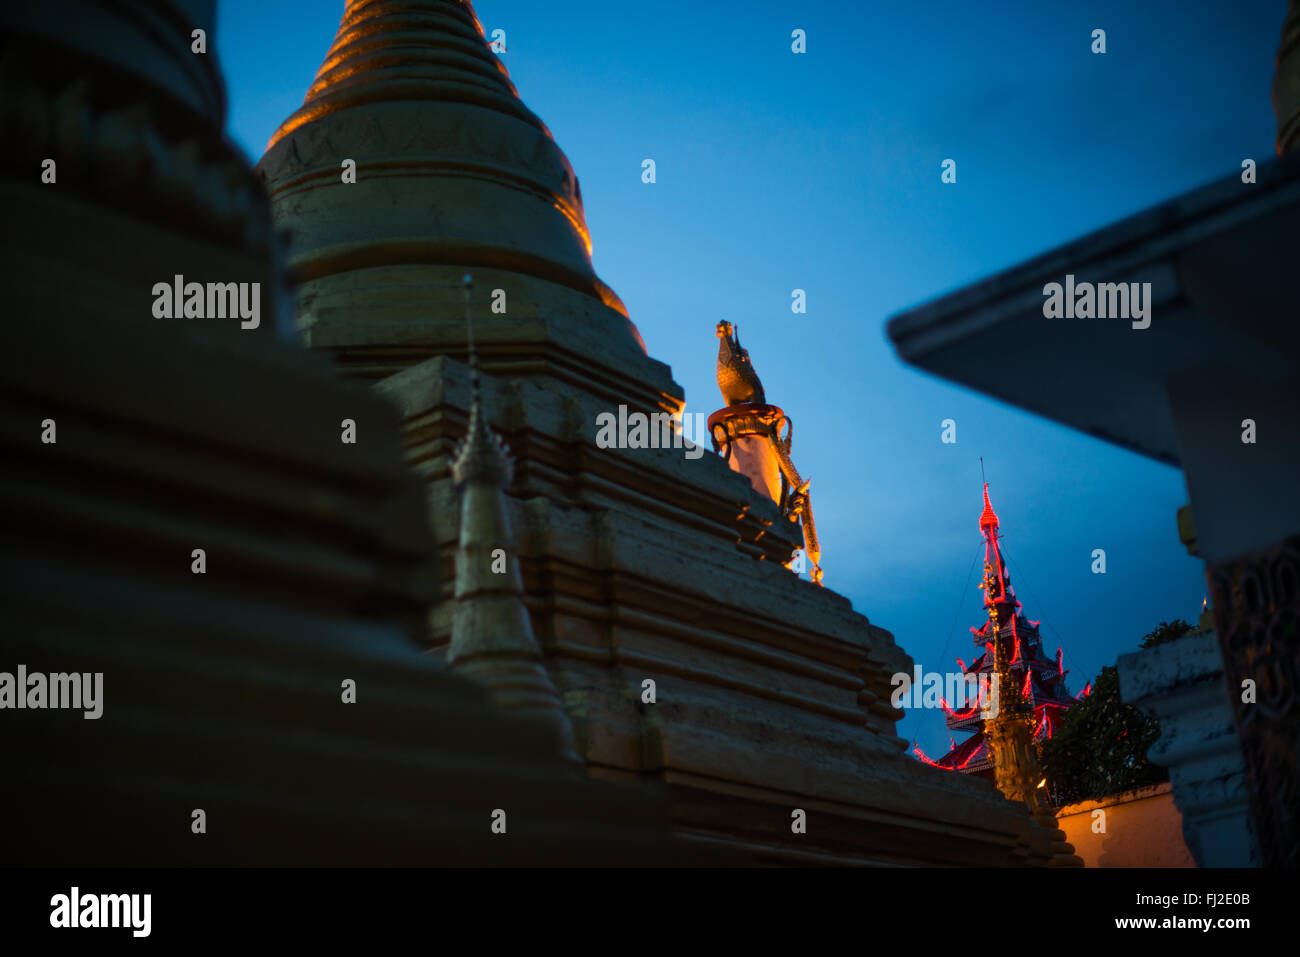 MANDALAY, Myanmar - seduta sulla sommità del Mandalay Hill, Sutaungpyei Pagoda dispone di un grande spalliere decorano il patio che offre vedute panoramiche sulla pianura su cui la città di Mandalay si siede. Foto Stock